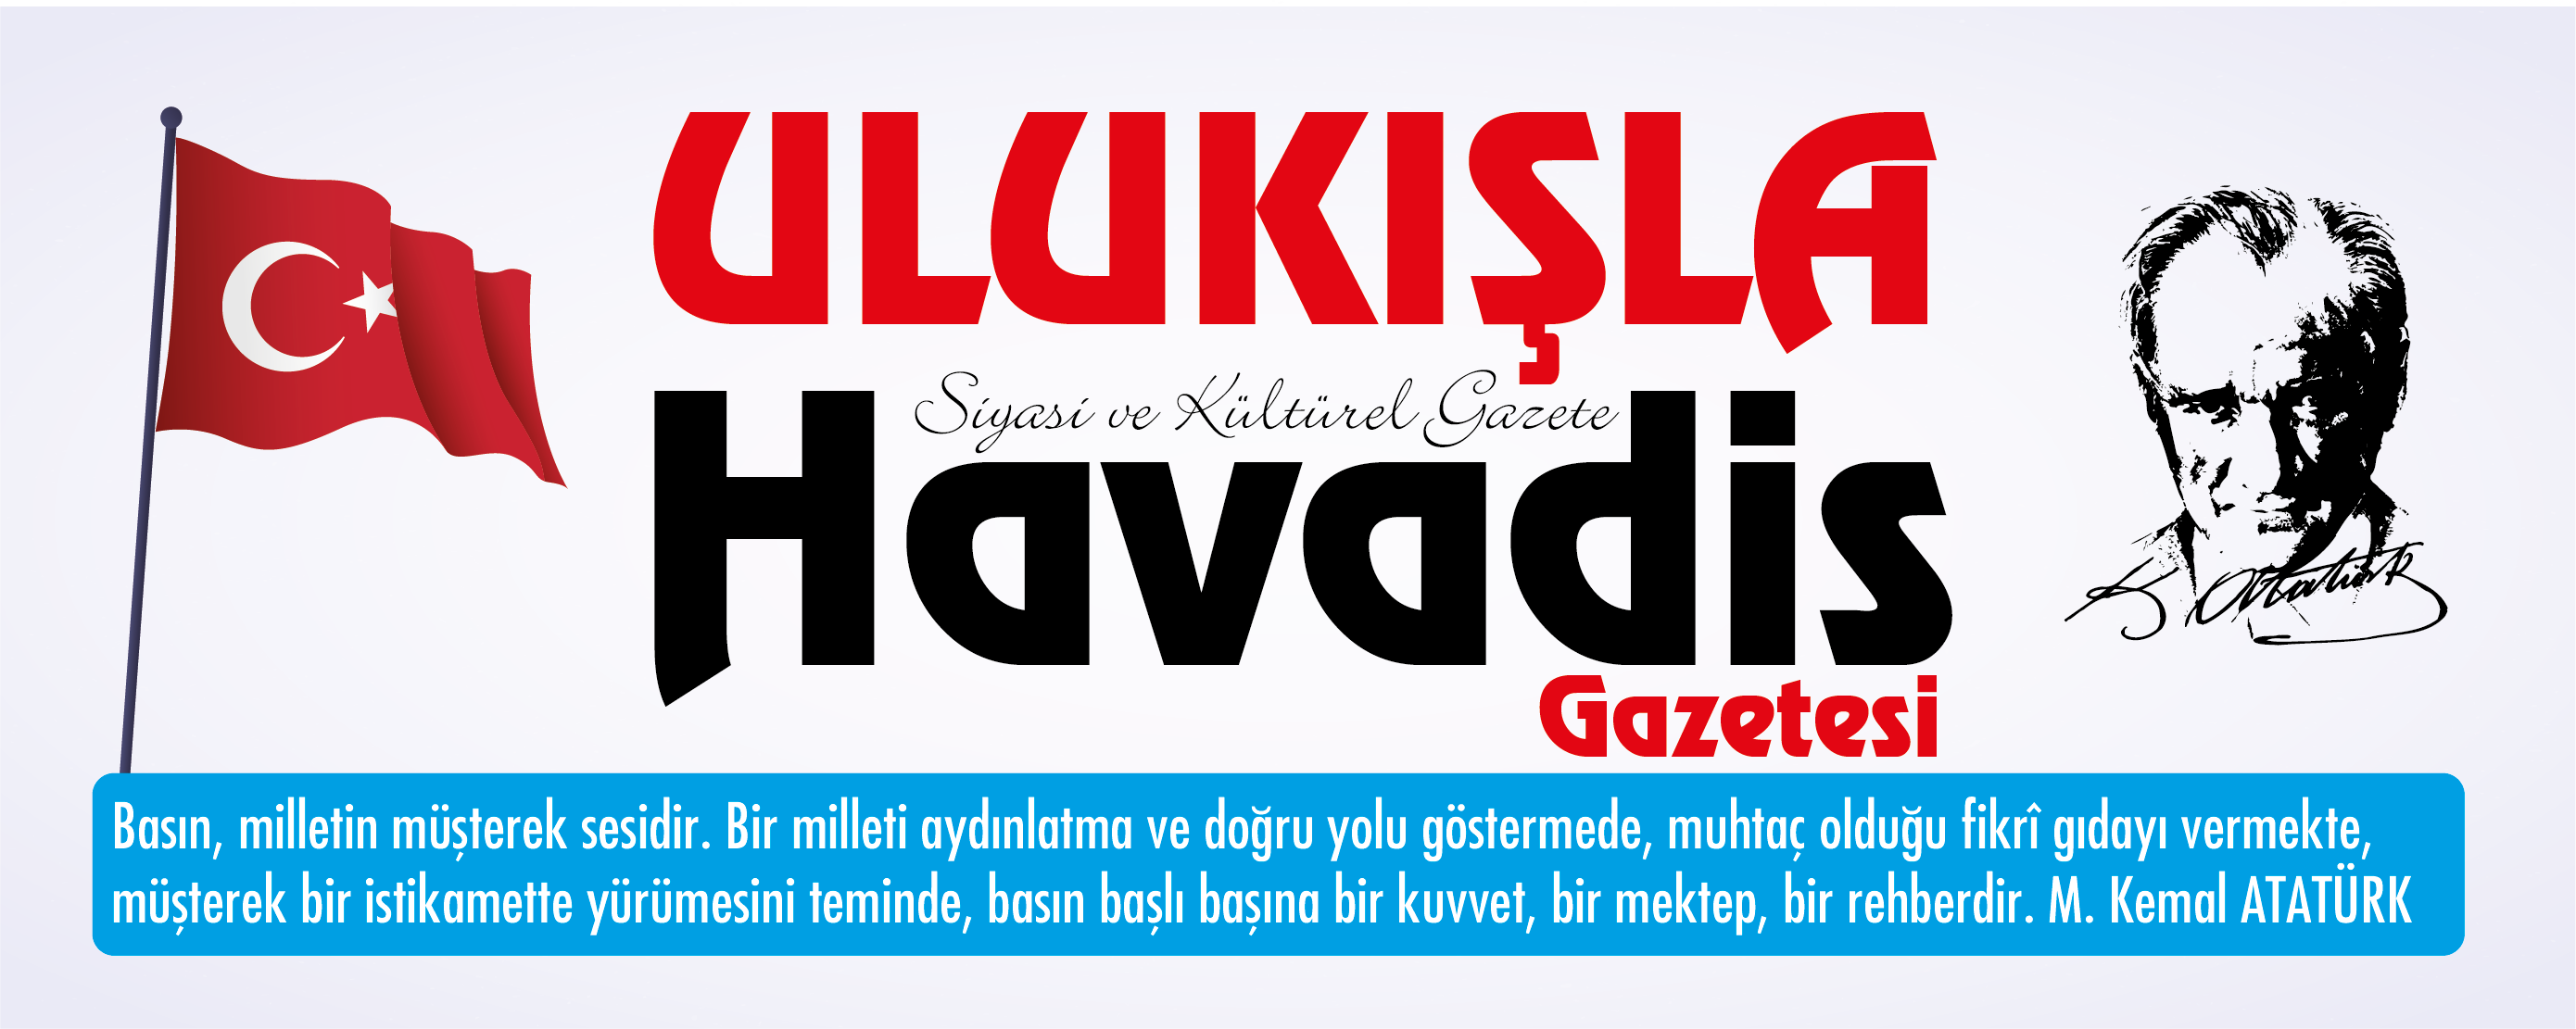 Emniyet Genel Müdürlüğü Haberleri - Ulukışla Havadis Gazetesi